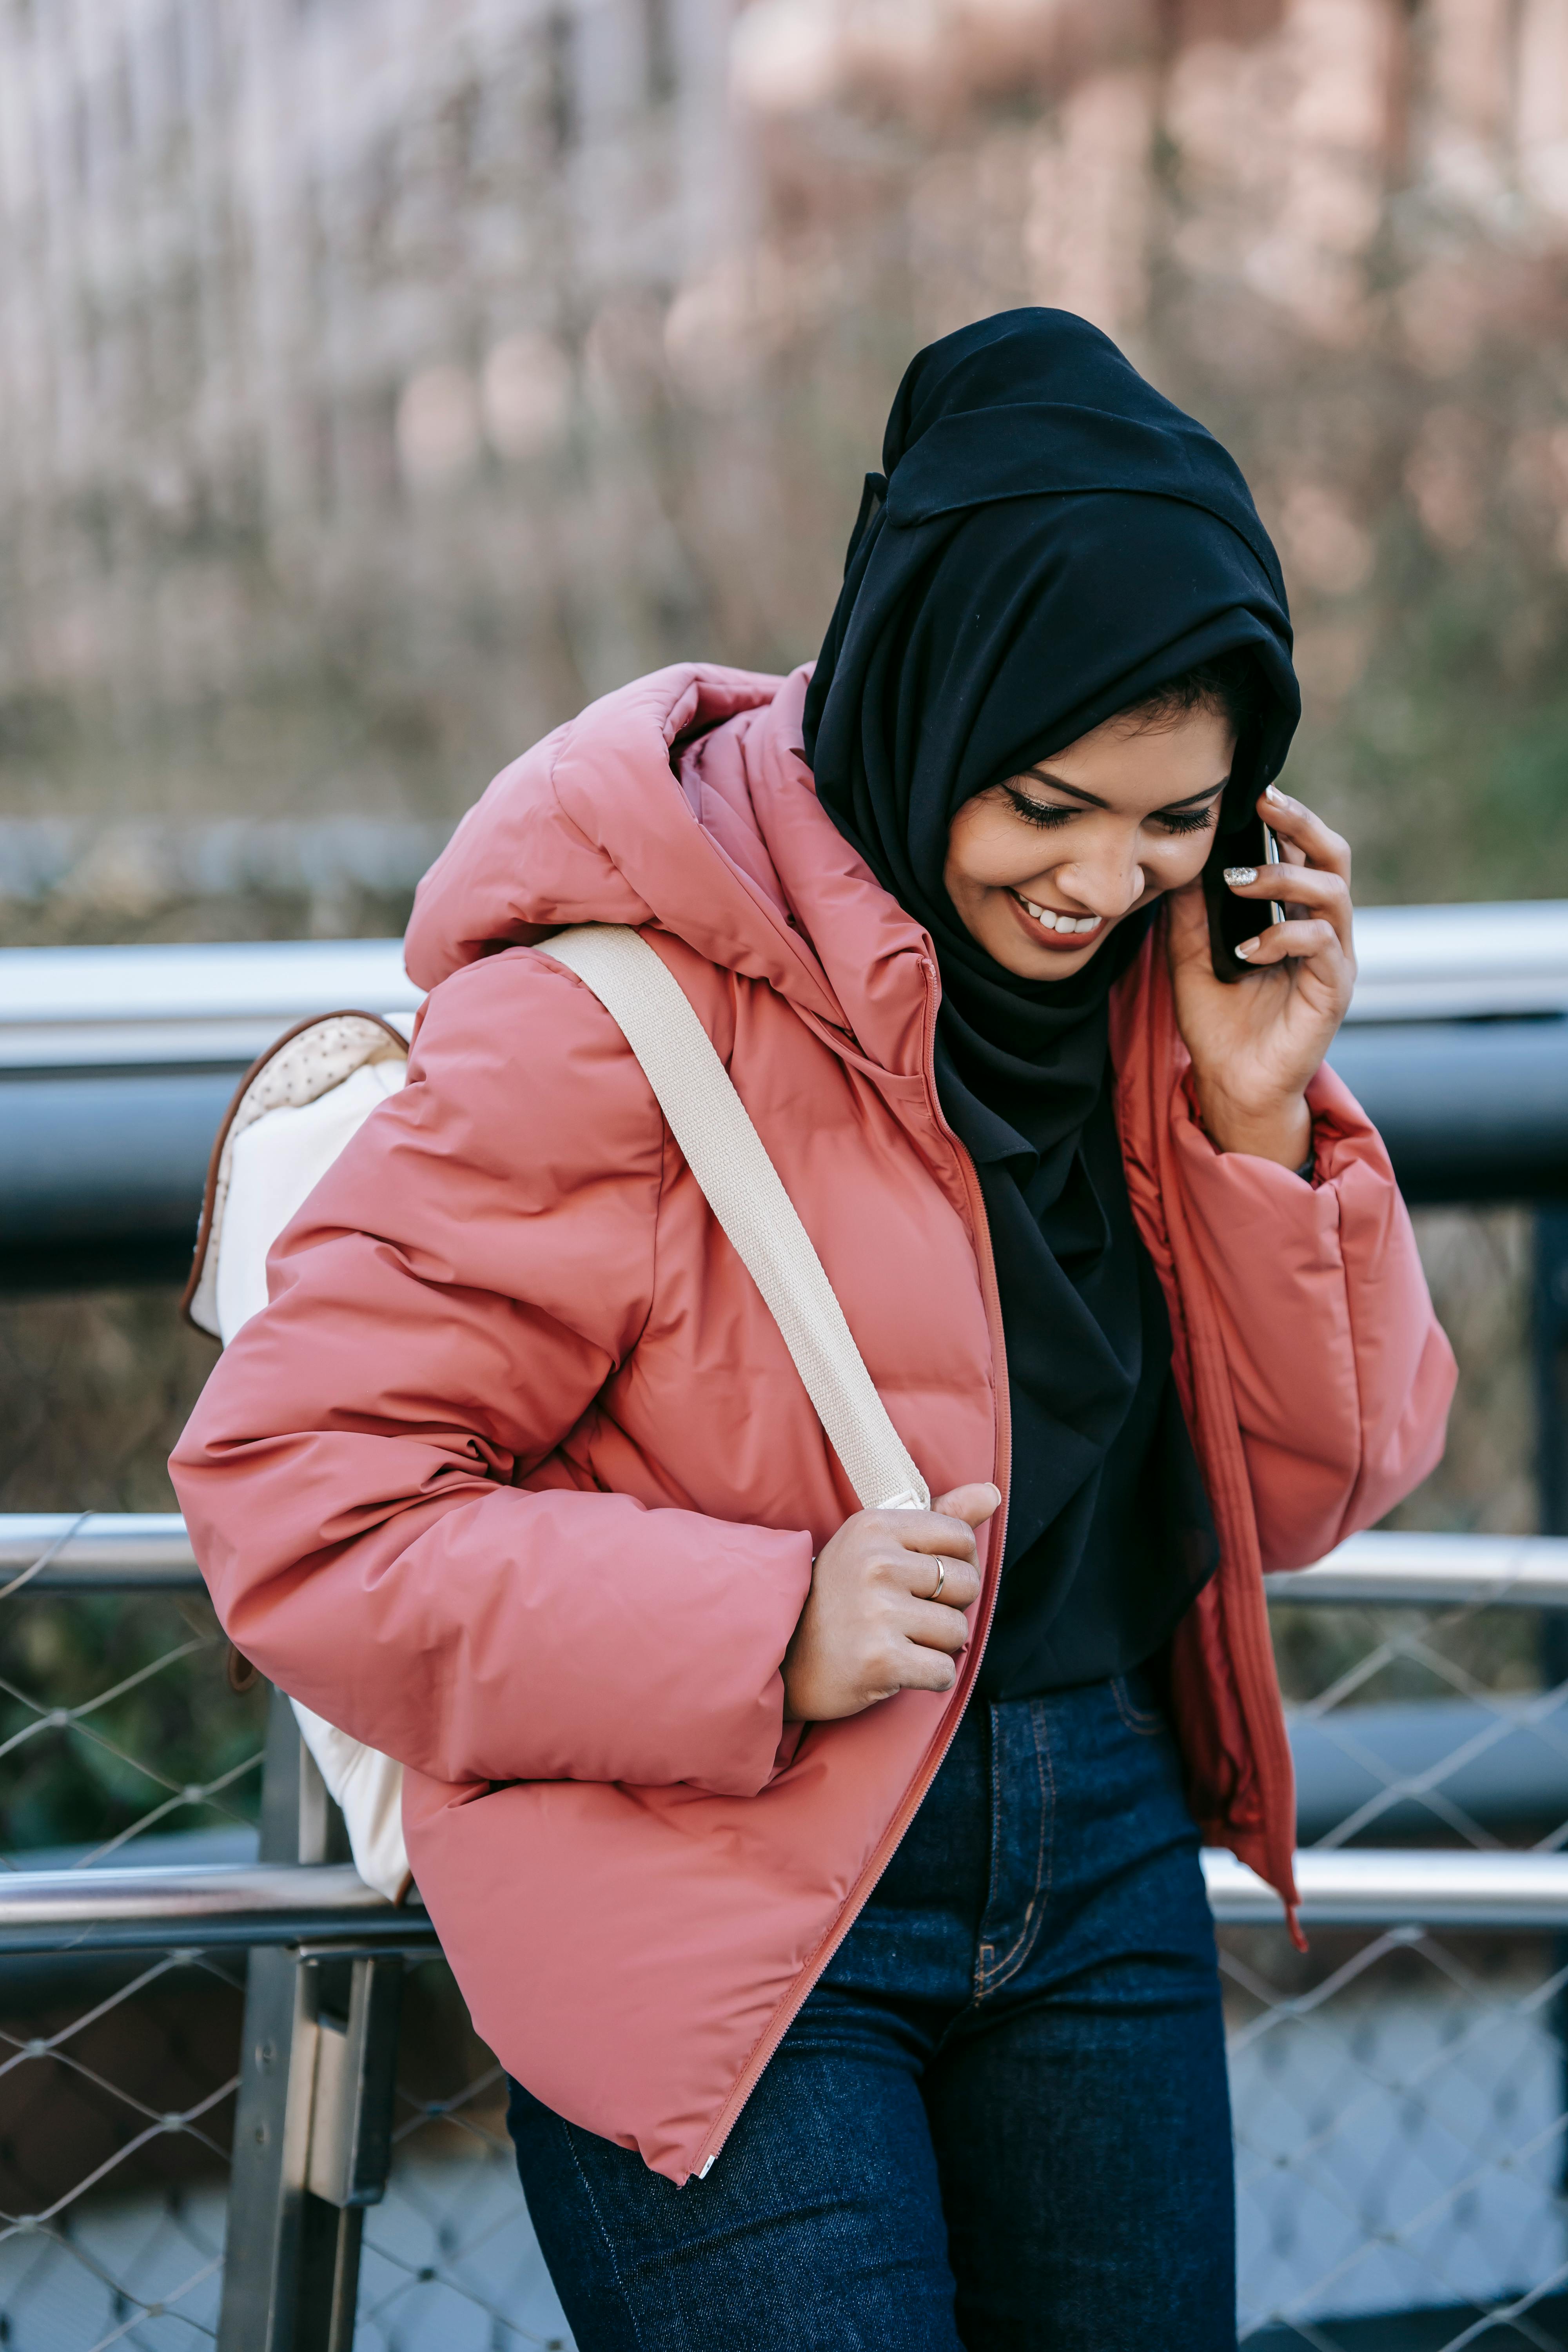 cheerful muslim woman speaking on smartphone on street in daytime